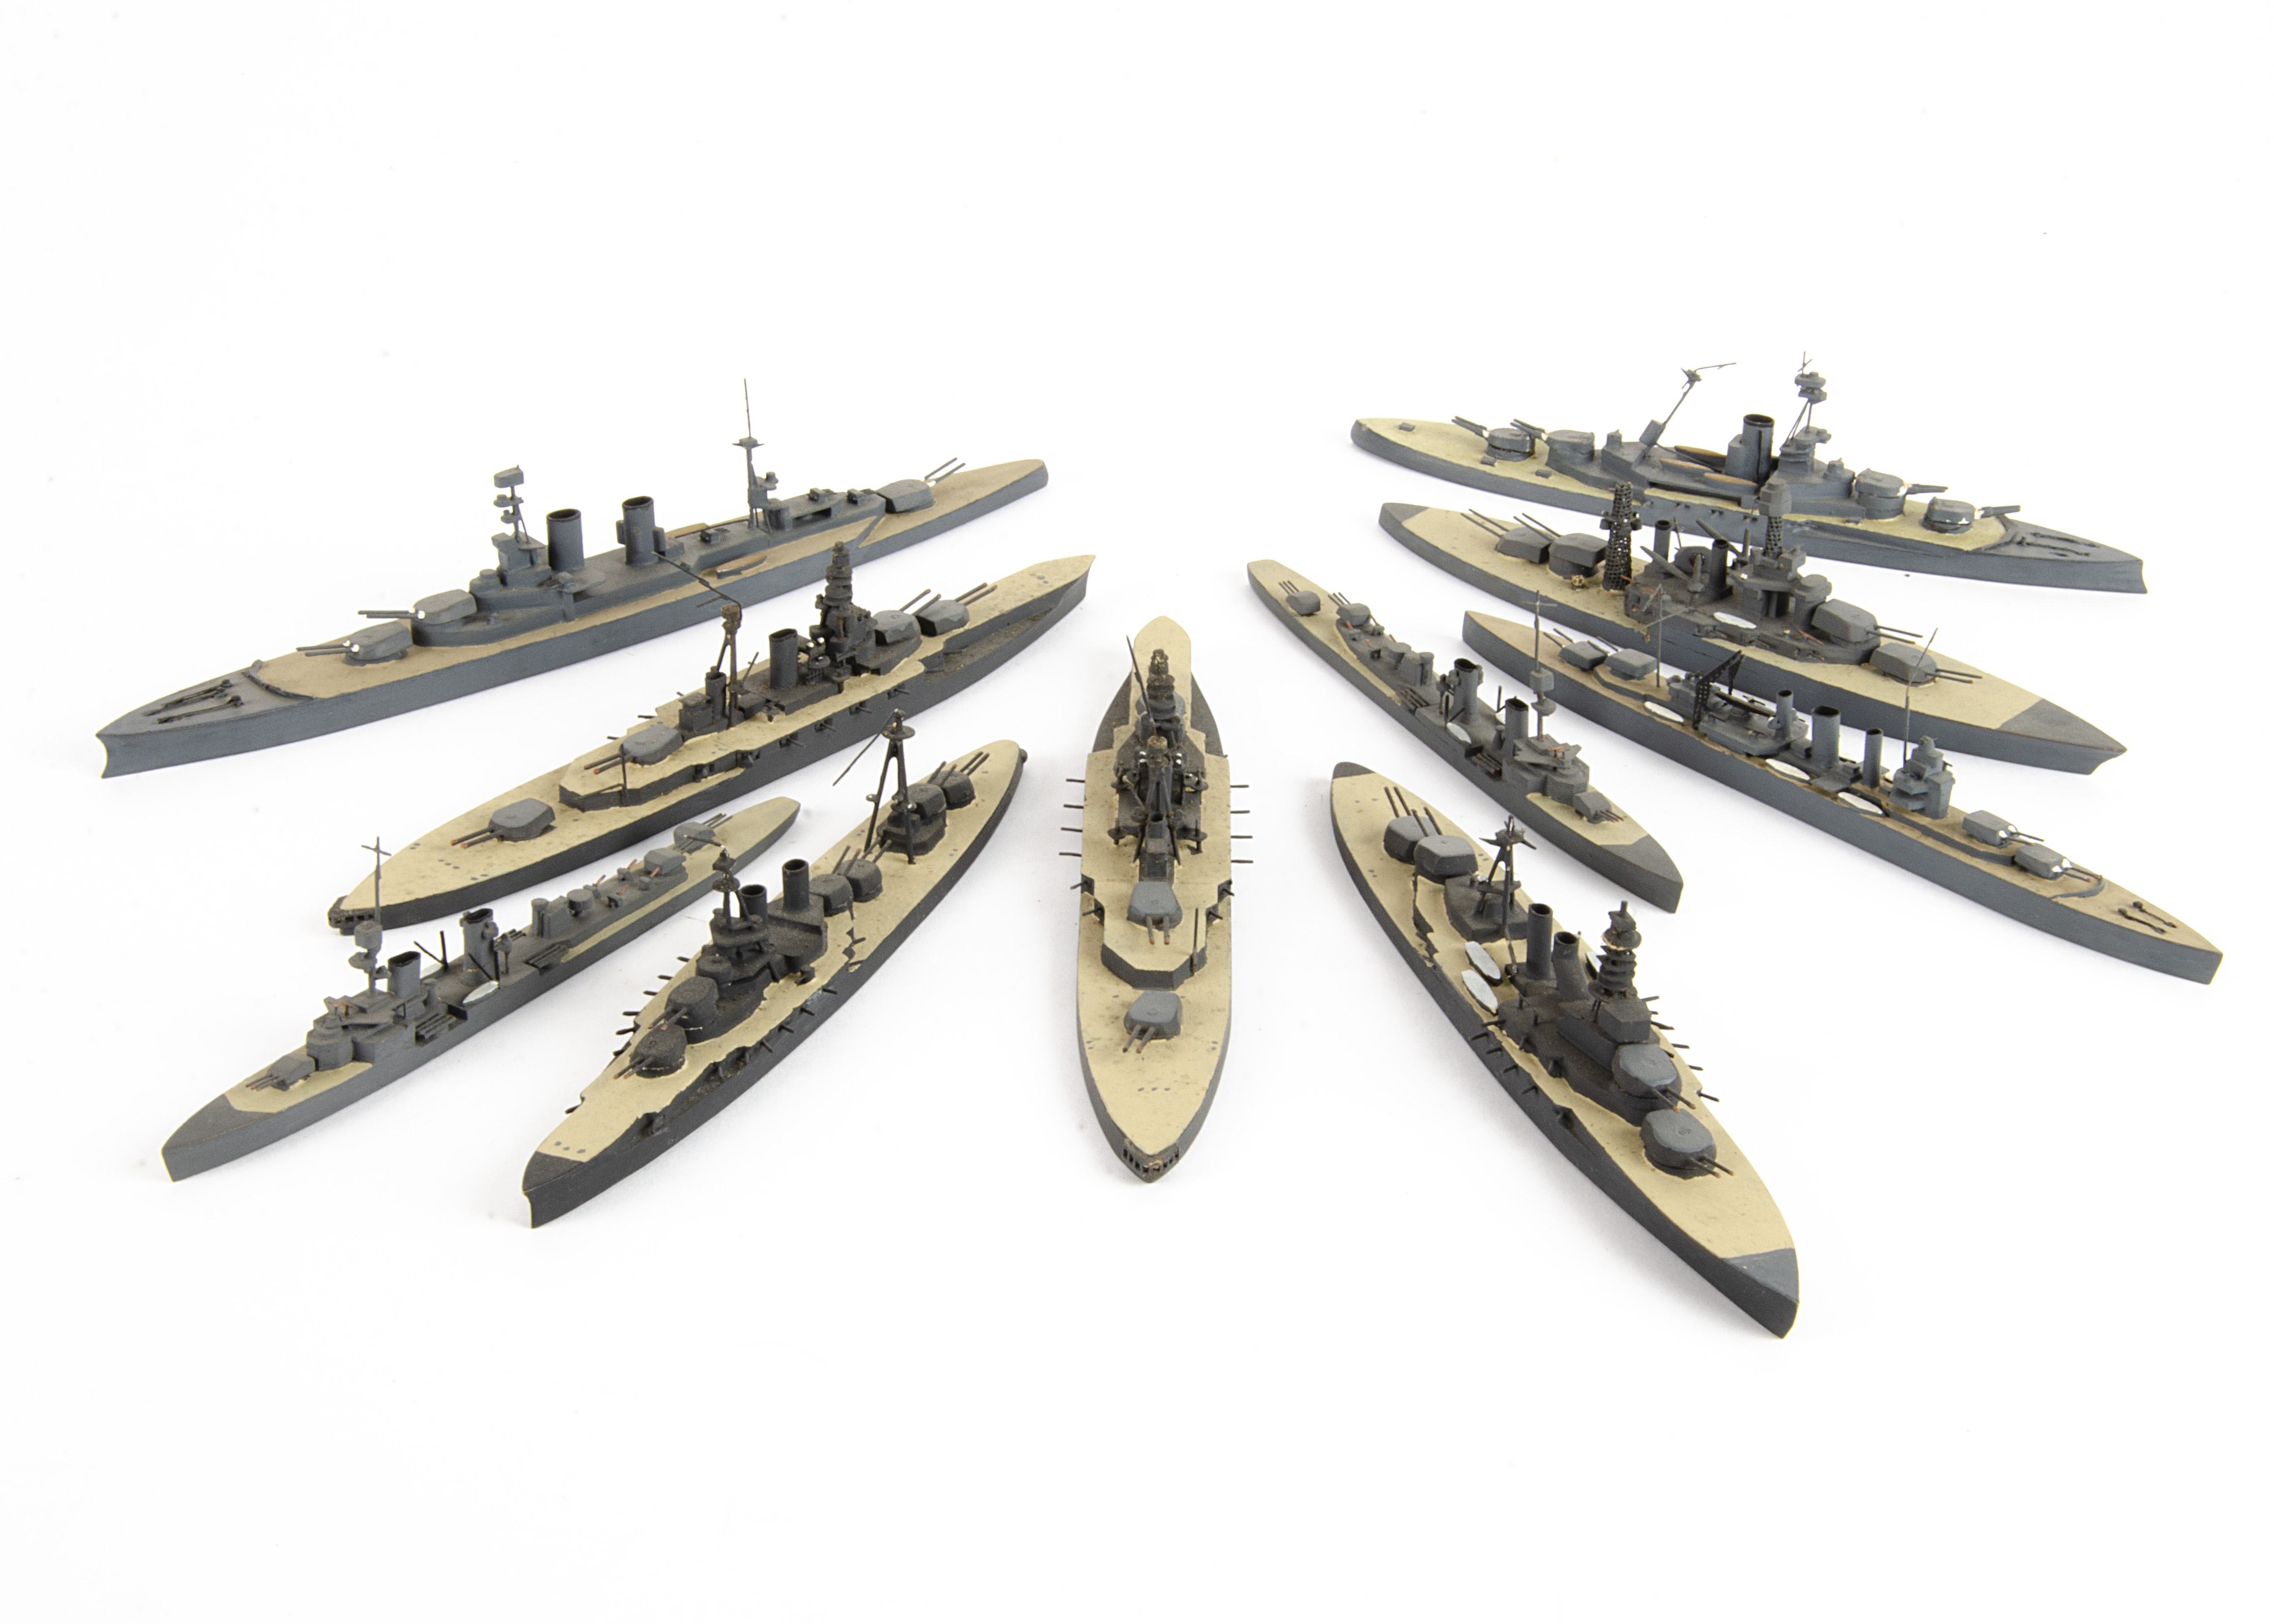 Bassett-Lowke Naval Waterline Models 1/1200 Scale, all with Bassett-Lowke paper labels includes, HMS